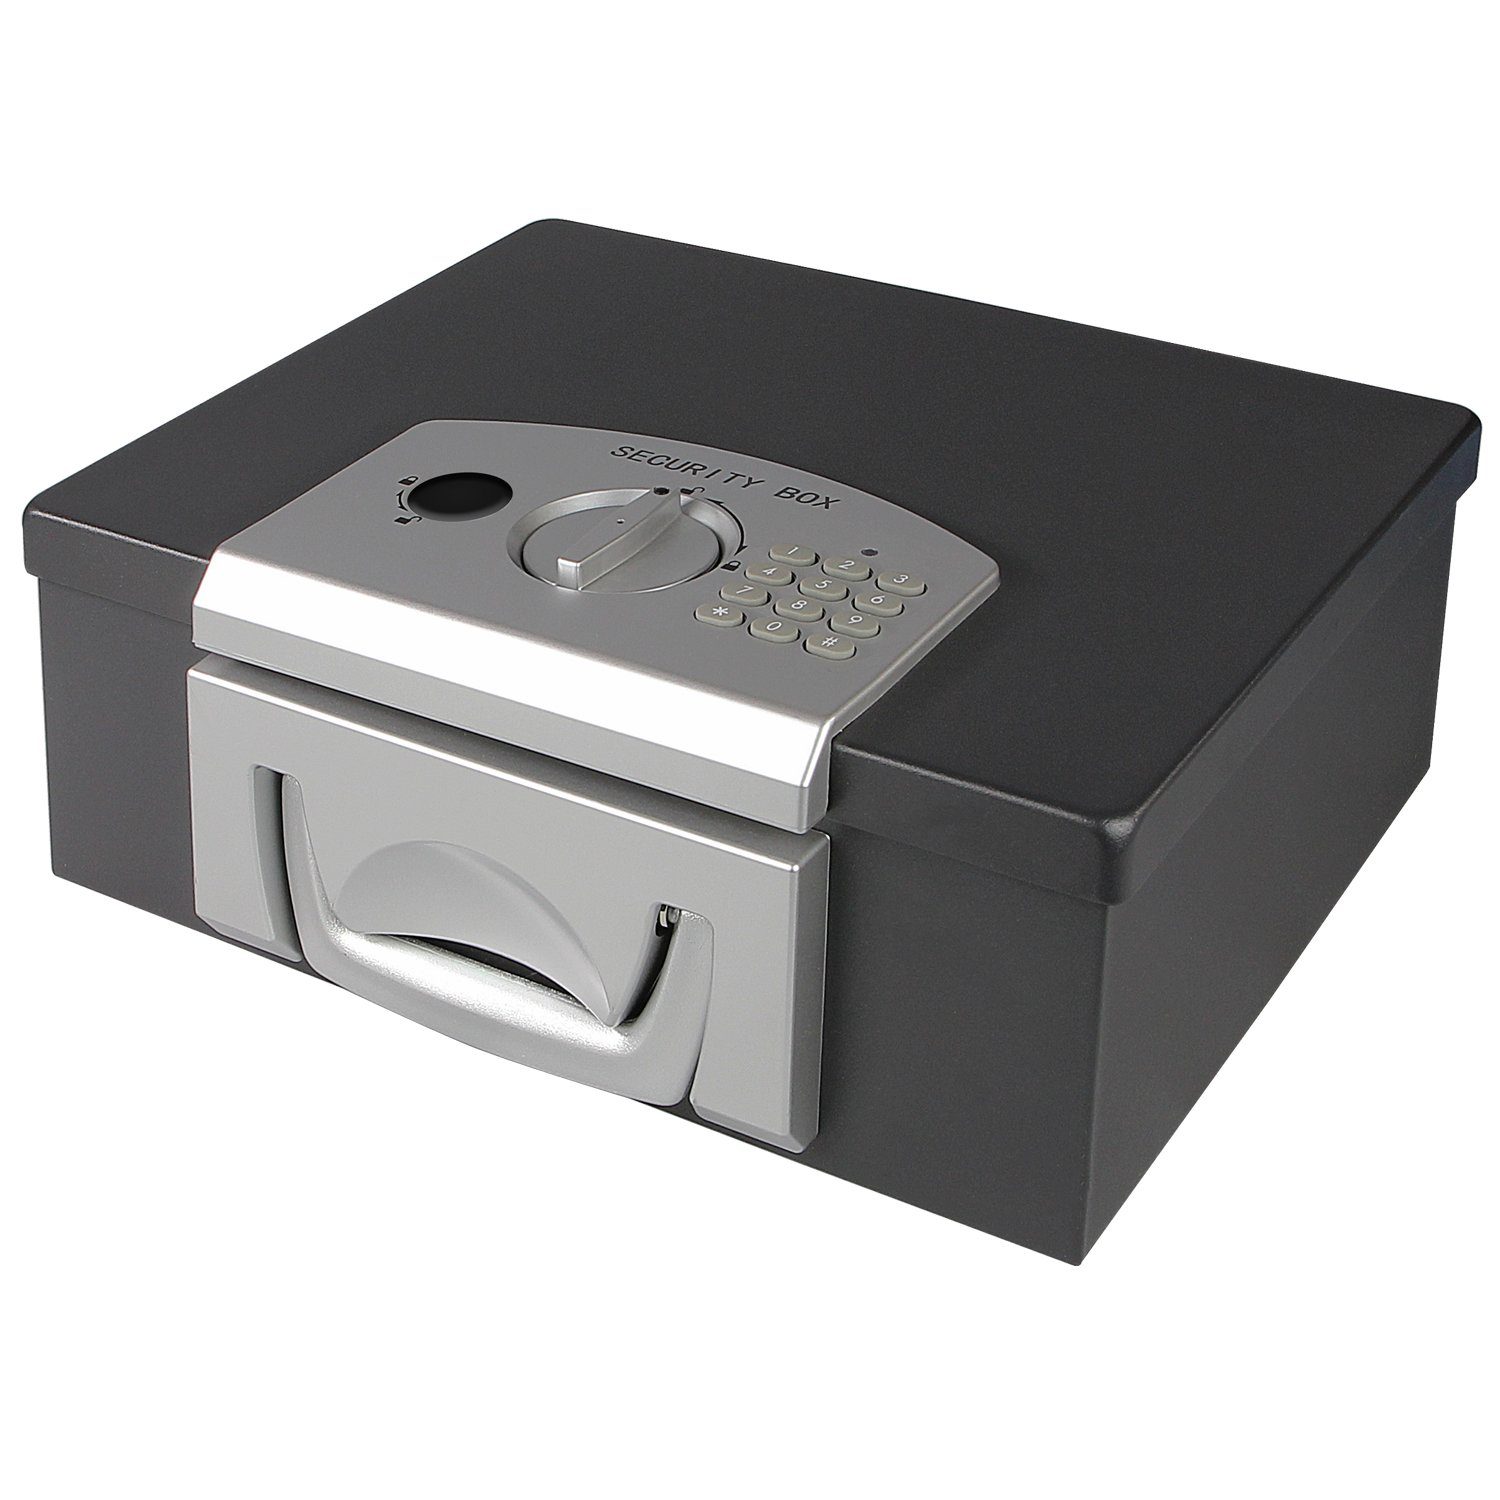 HMF Geldkassette 1006-02, Dokumentenbox mit Elektronikschloss, DIN A4, 32,5 x 25,5 x 12,5 cm | Geldkassetten